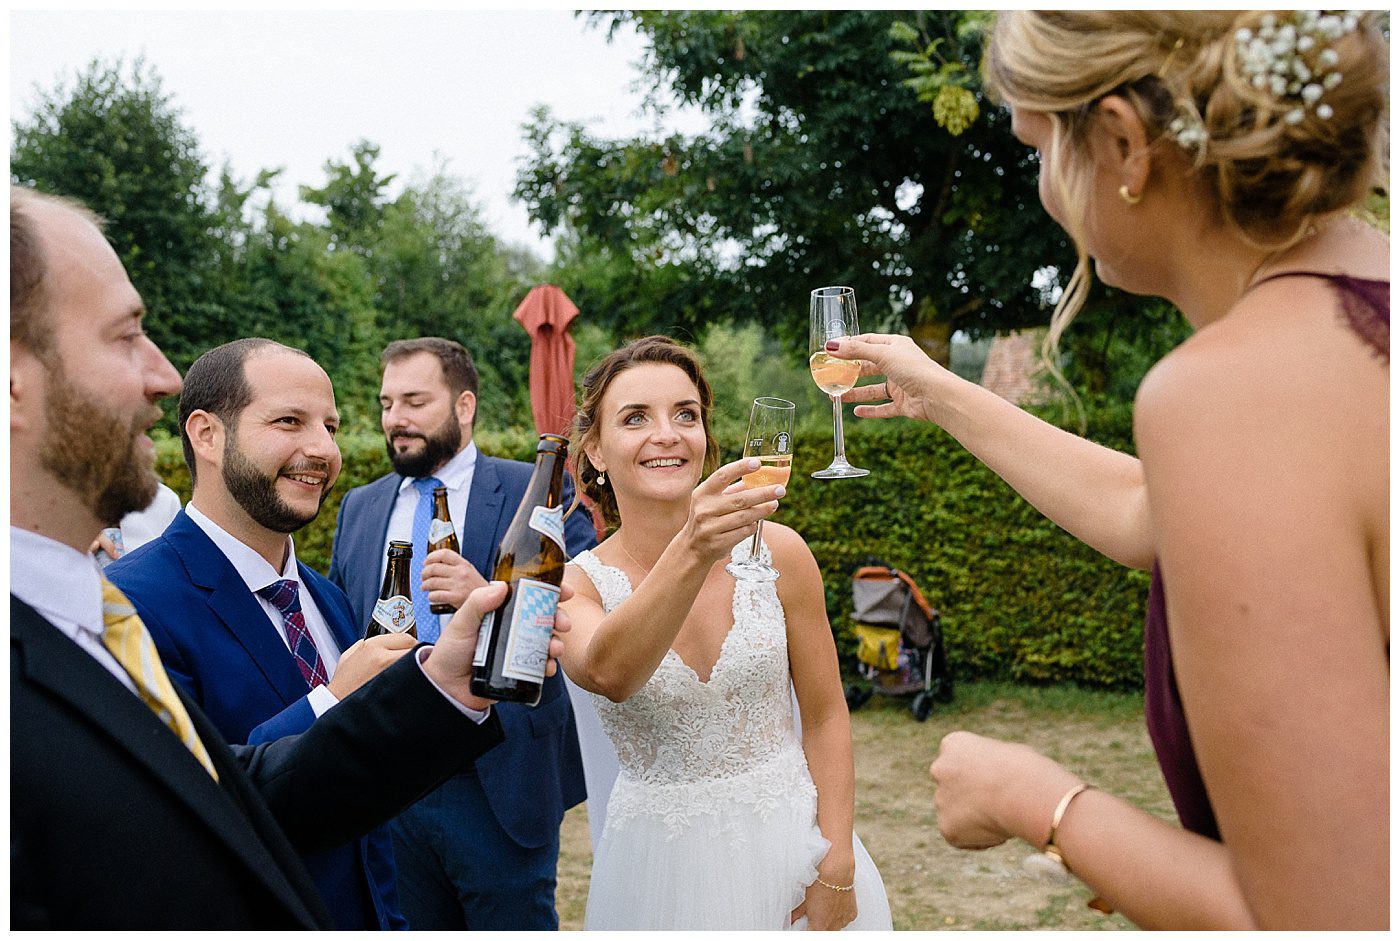 Anna Zeiter photography 600 Hochzeit auf dem Birnauer Oberhof am Bodensee